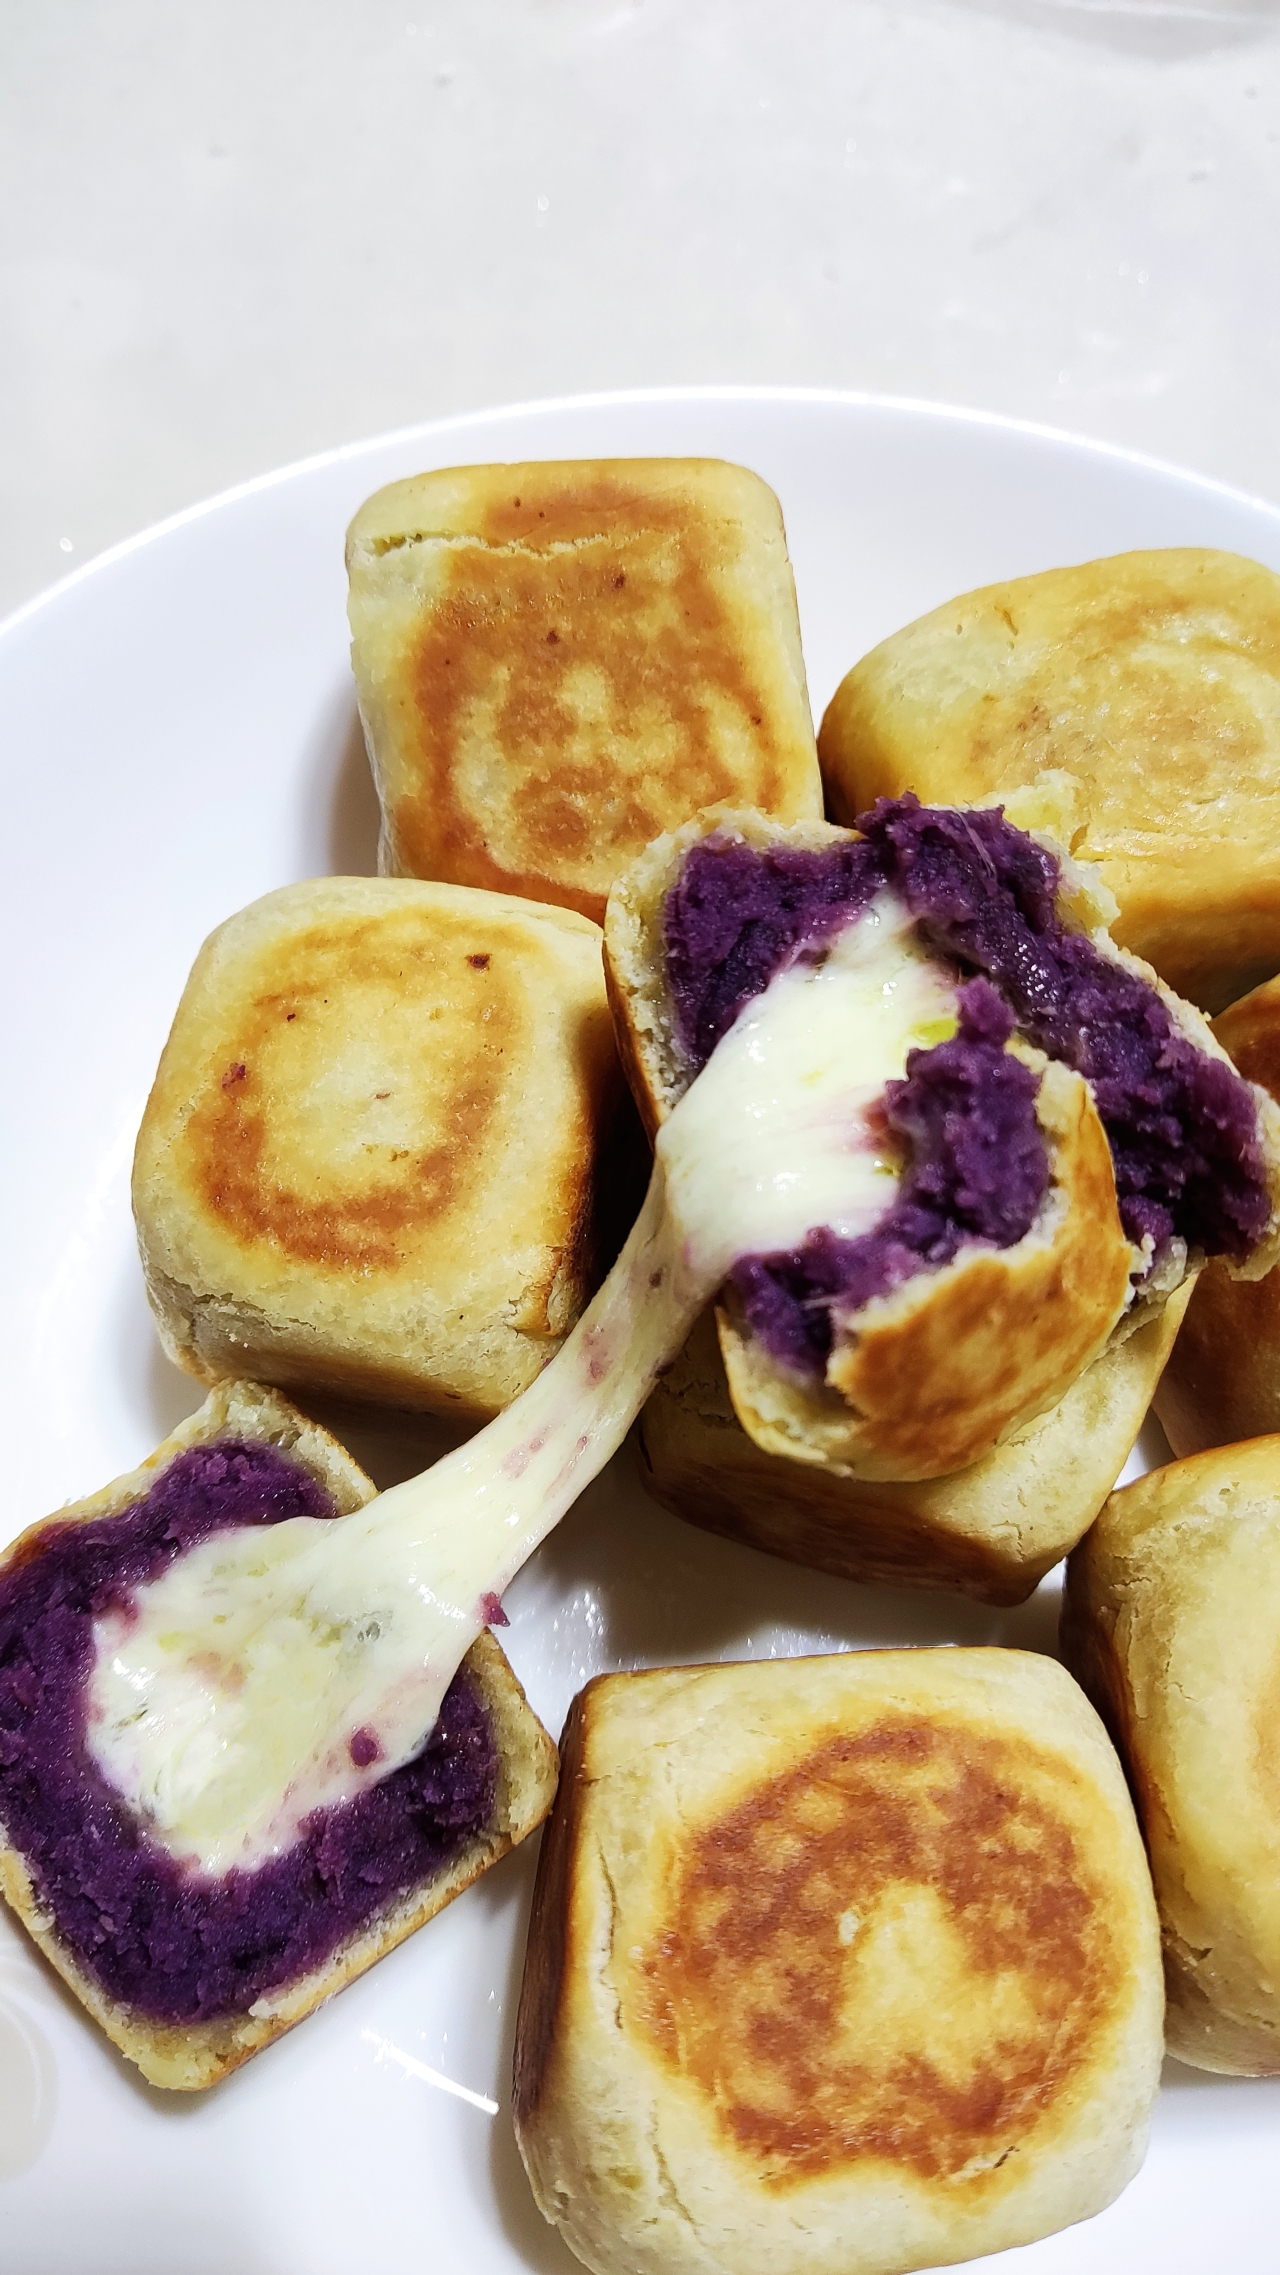 网红爆浆紫薯仙豆糕(低卡版)超长拉丝